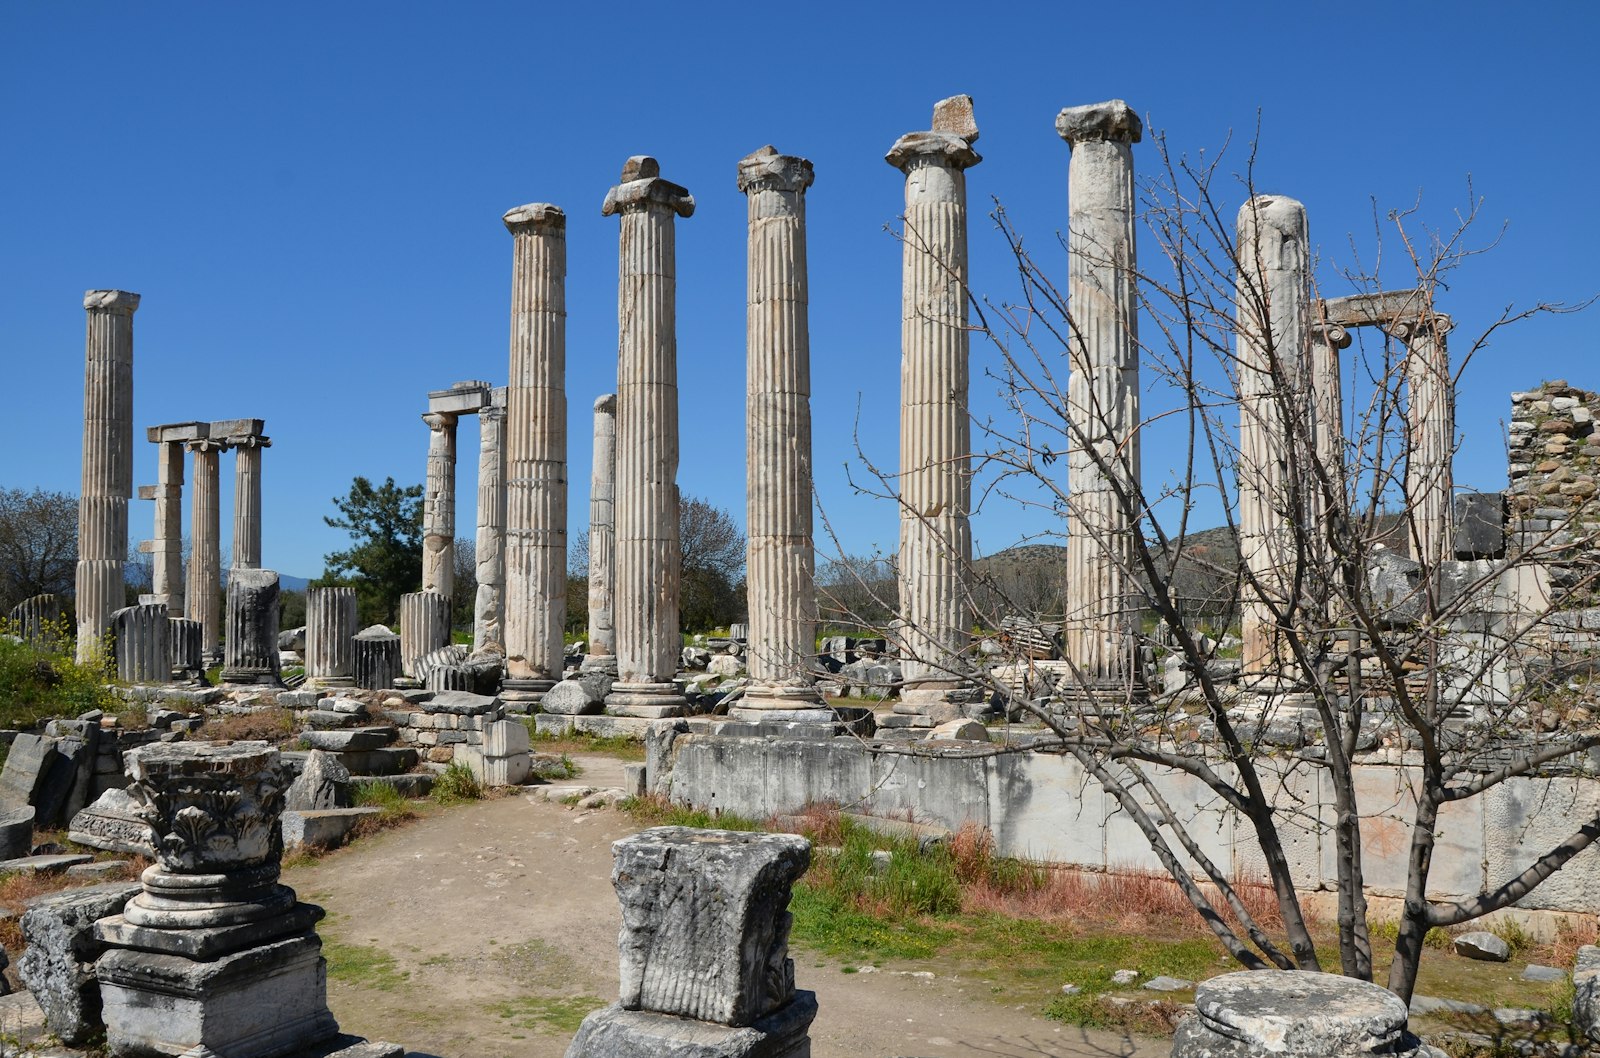 The Temple of Aphrodite in Aphrodisias, Turkey